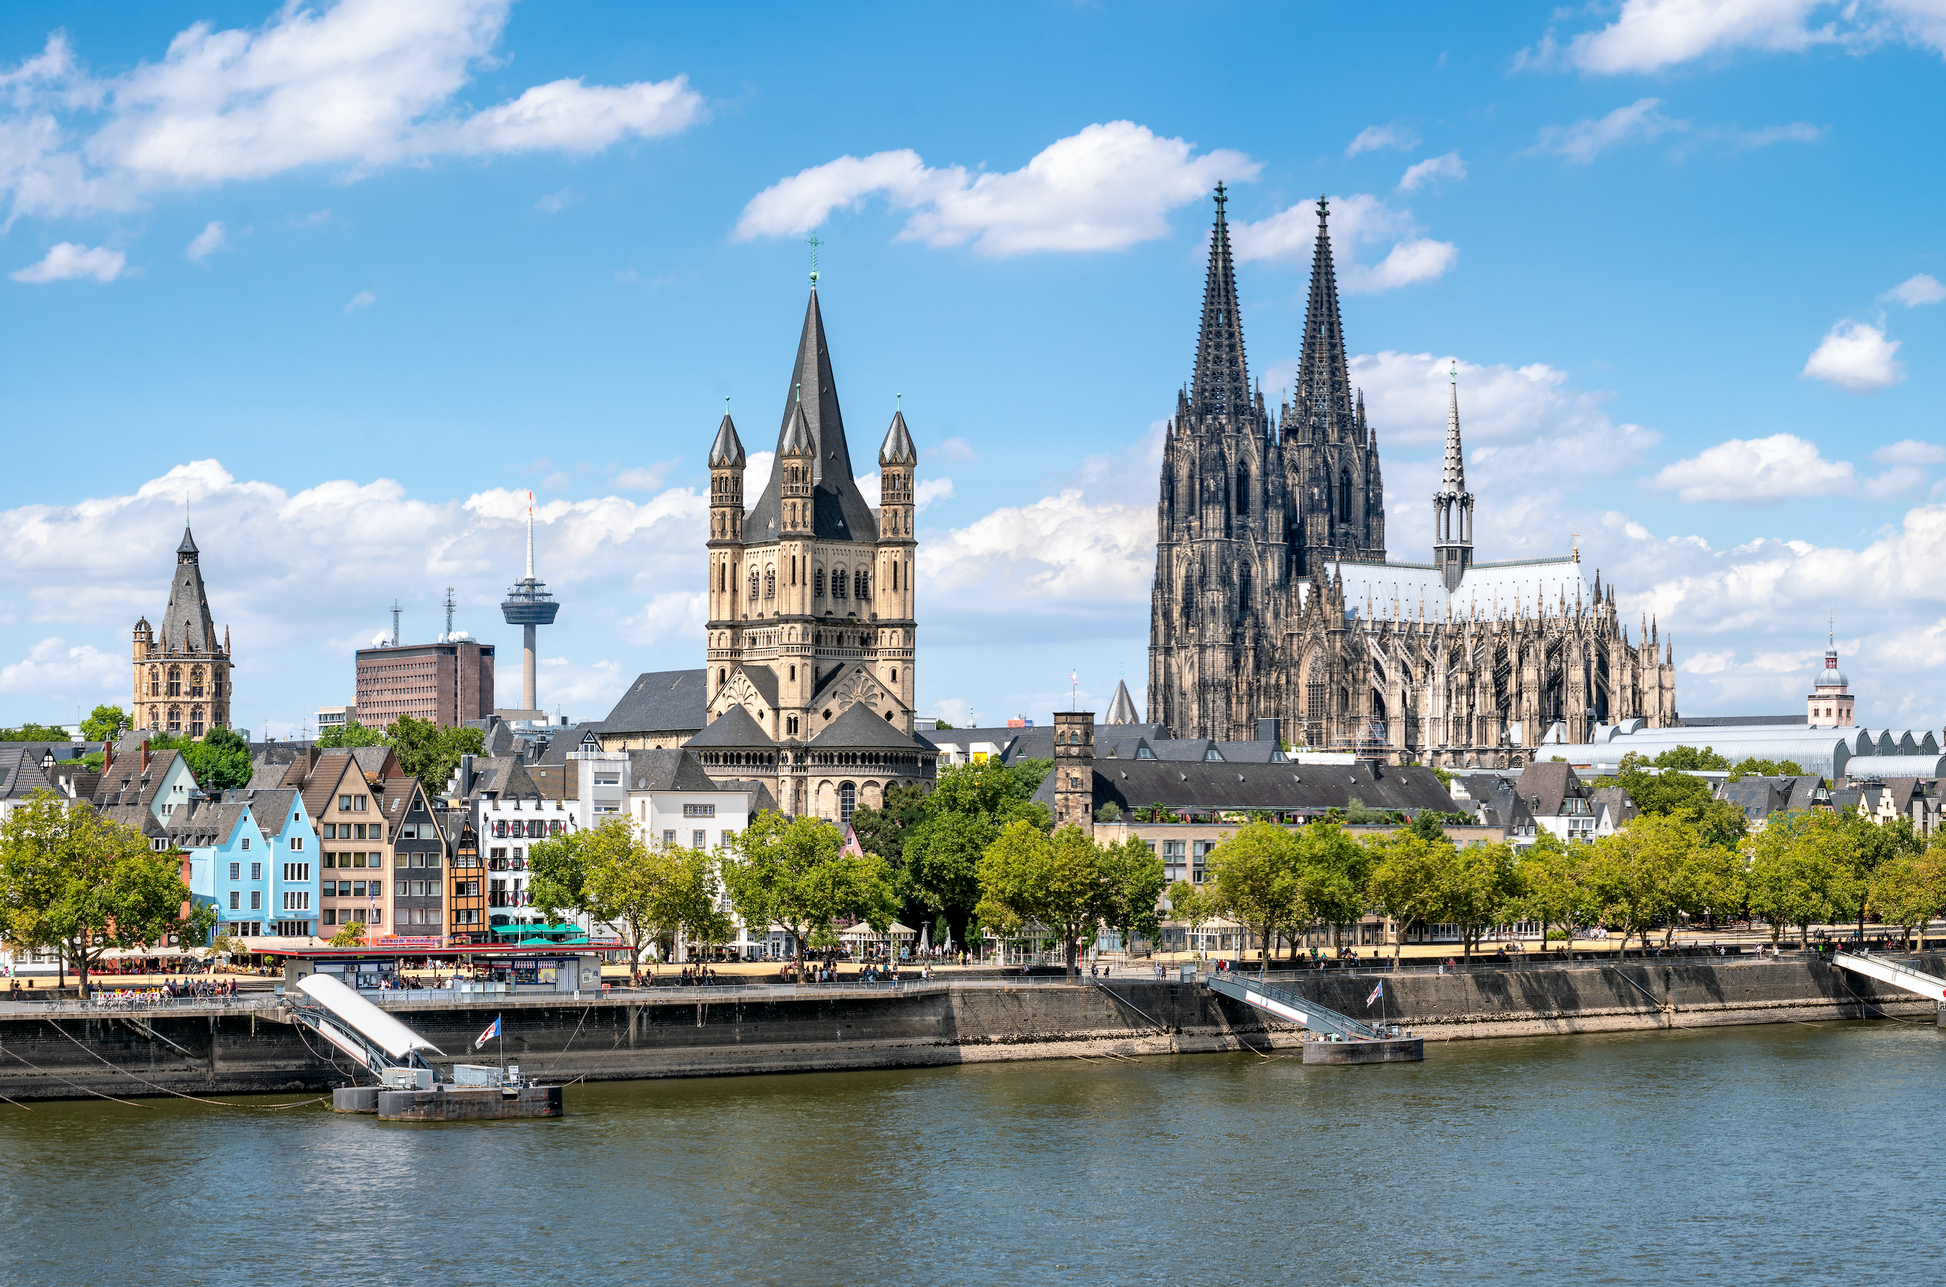 Panoramablick auf das Rheinufer in Köln mit dem Kölner Dom und der Kirche Groß St. Martin, im Hintergrund der Colonius Fernsehturm und andere städtische Gebäude unter einem blauen Himmel mit weißen Wolken.